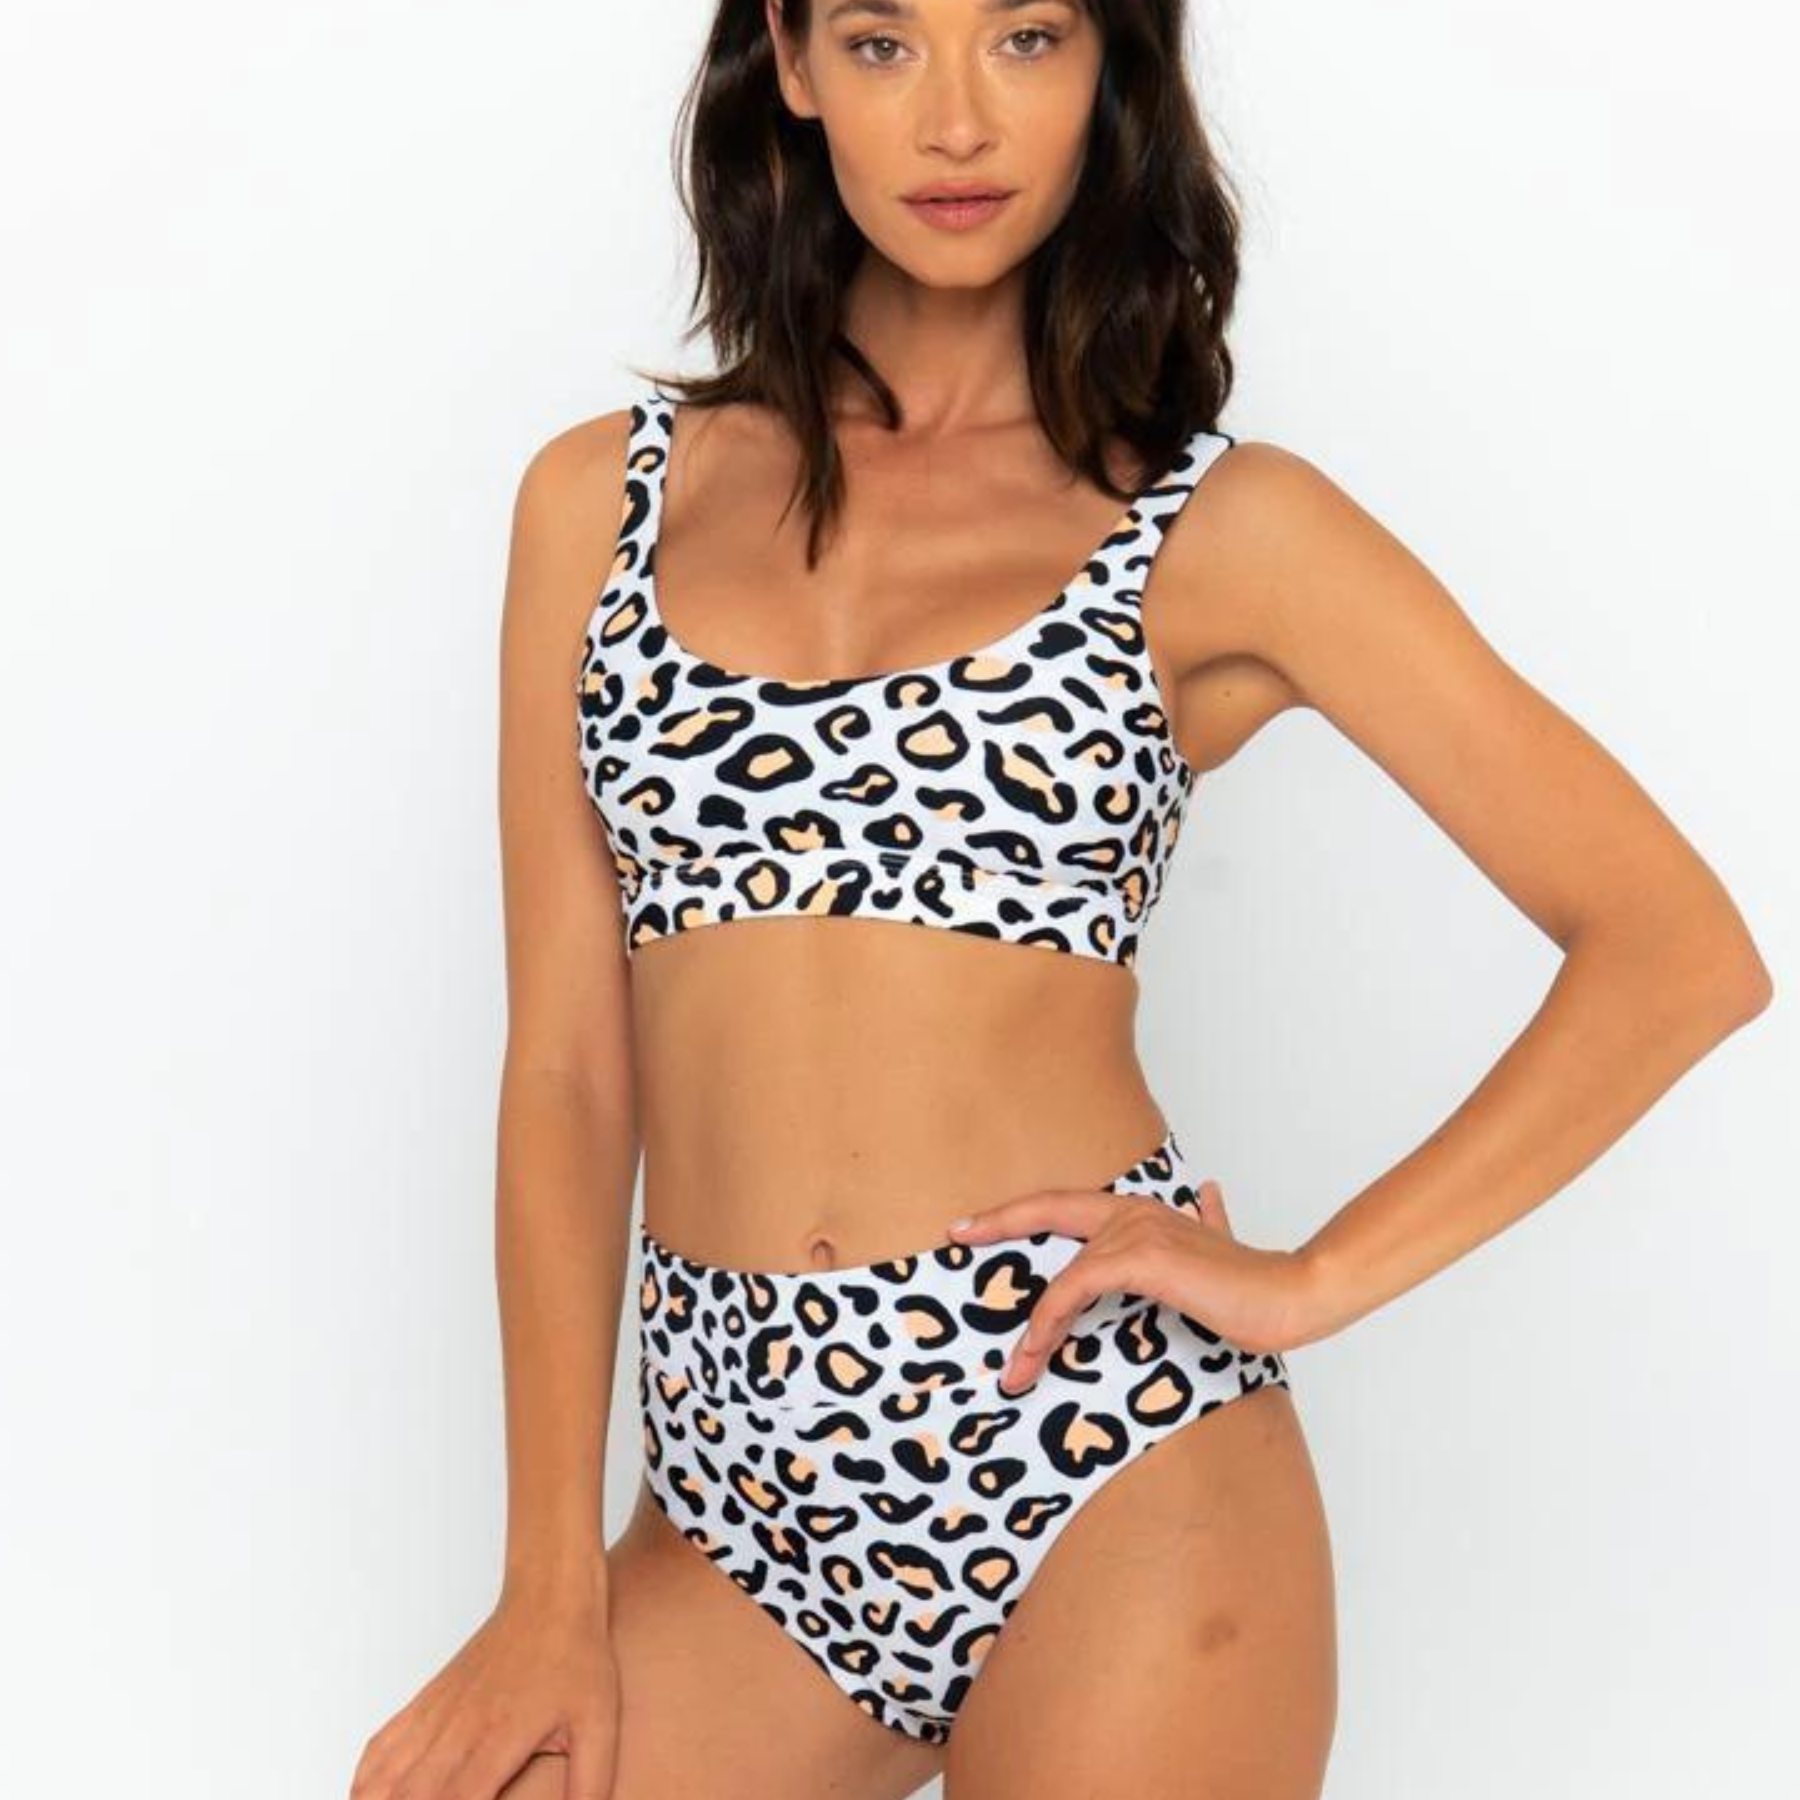 Model wearing the safari animal print bikini from infamous swim